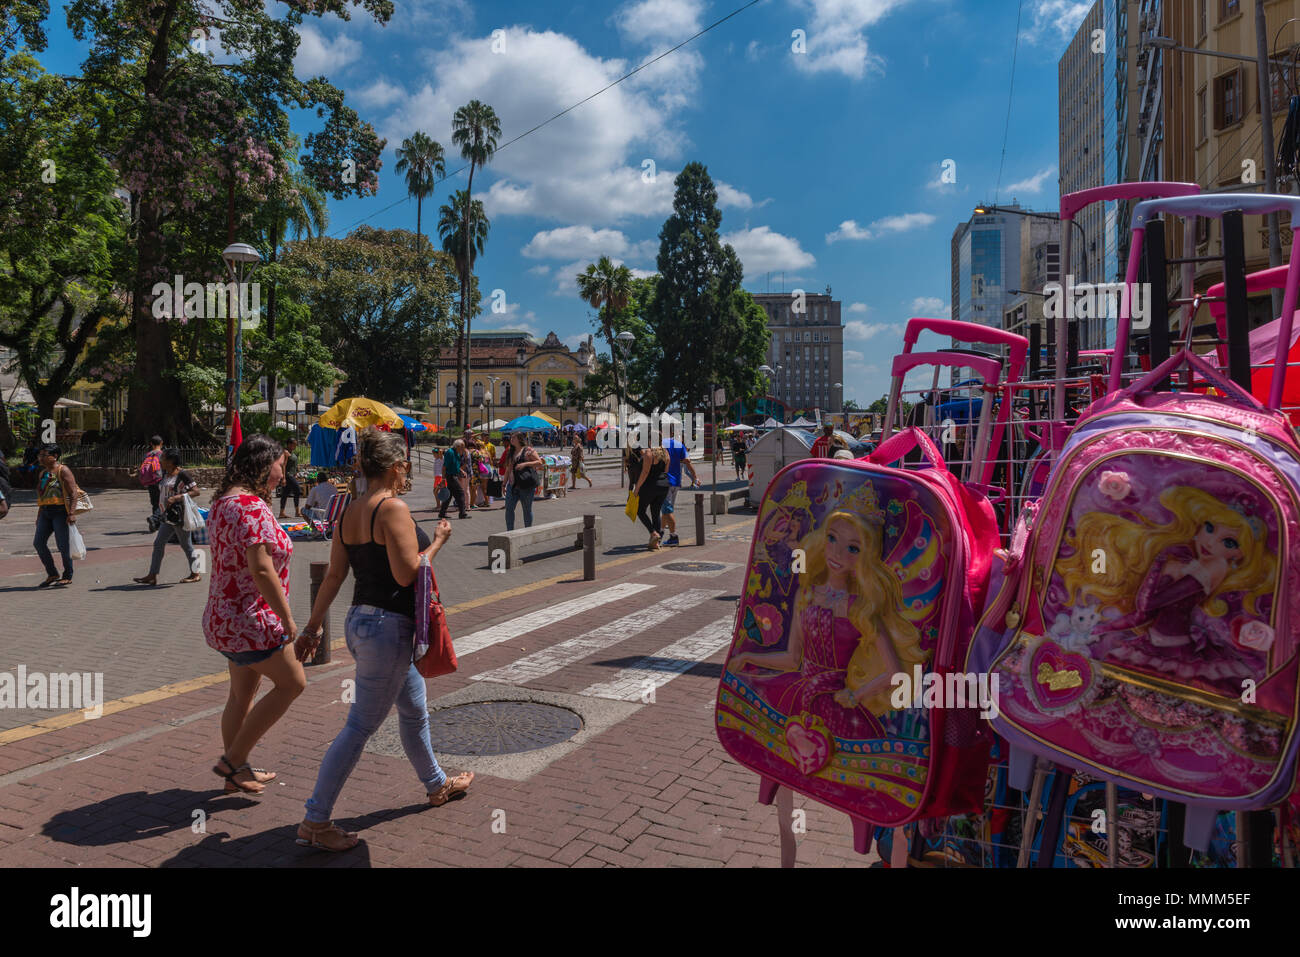 Daily life in the busy city centre, Porto Alegre, Rio Grande do Sul, Brazil, Latin America Stock Photo